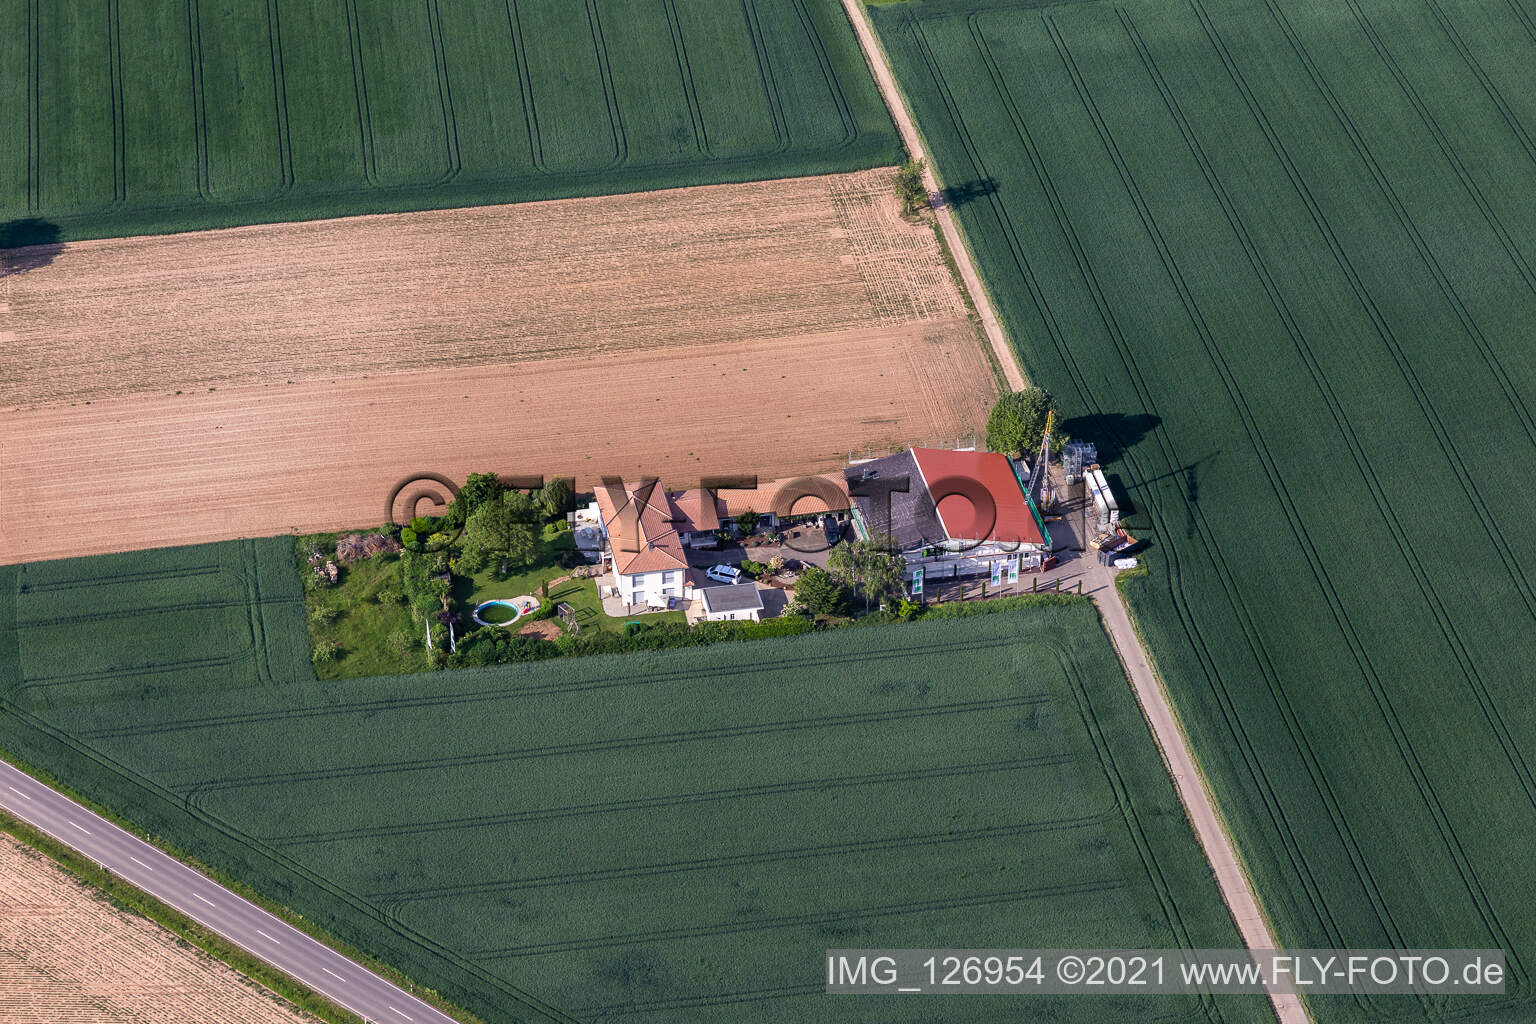 Luftbild von Bioland Weingut Neuspergerhof in Rohrbach im Bundesland Rheinland-Pfalz, Deutschland